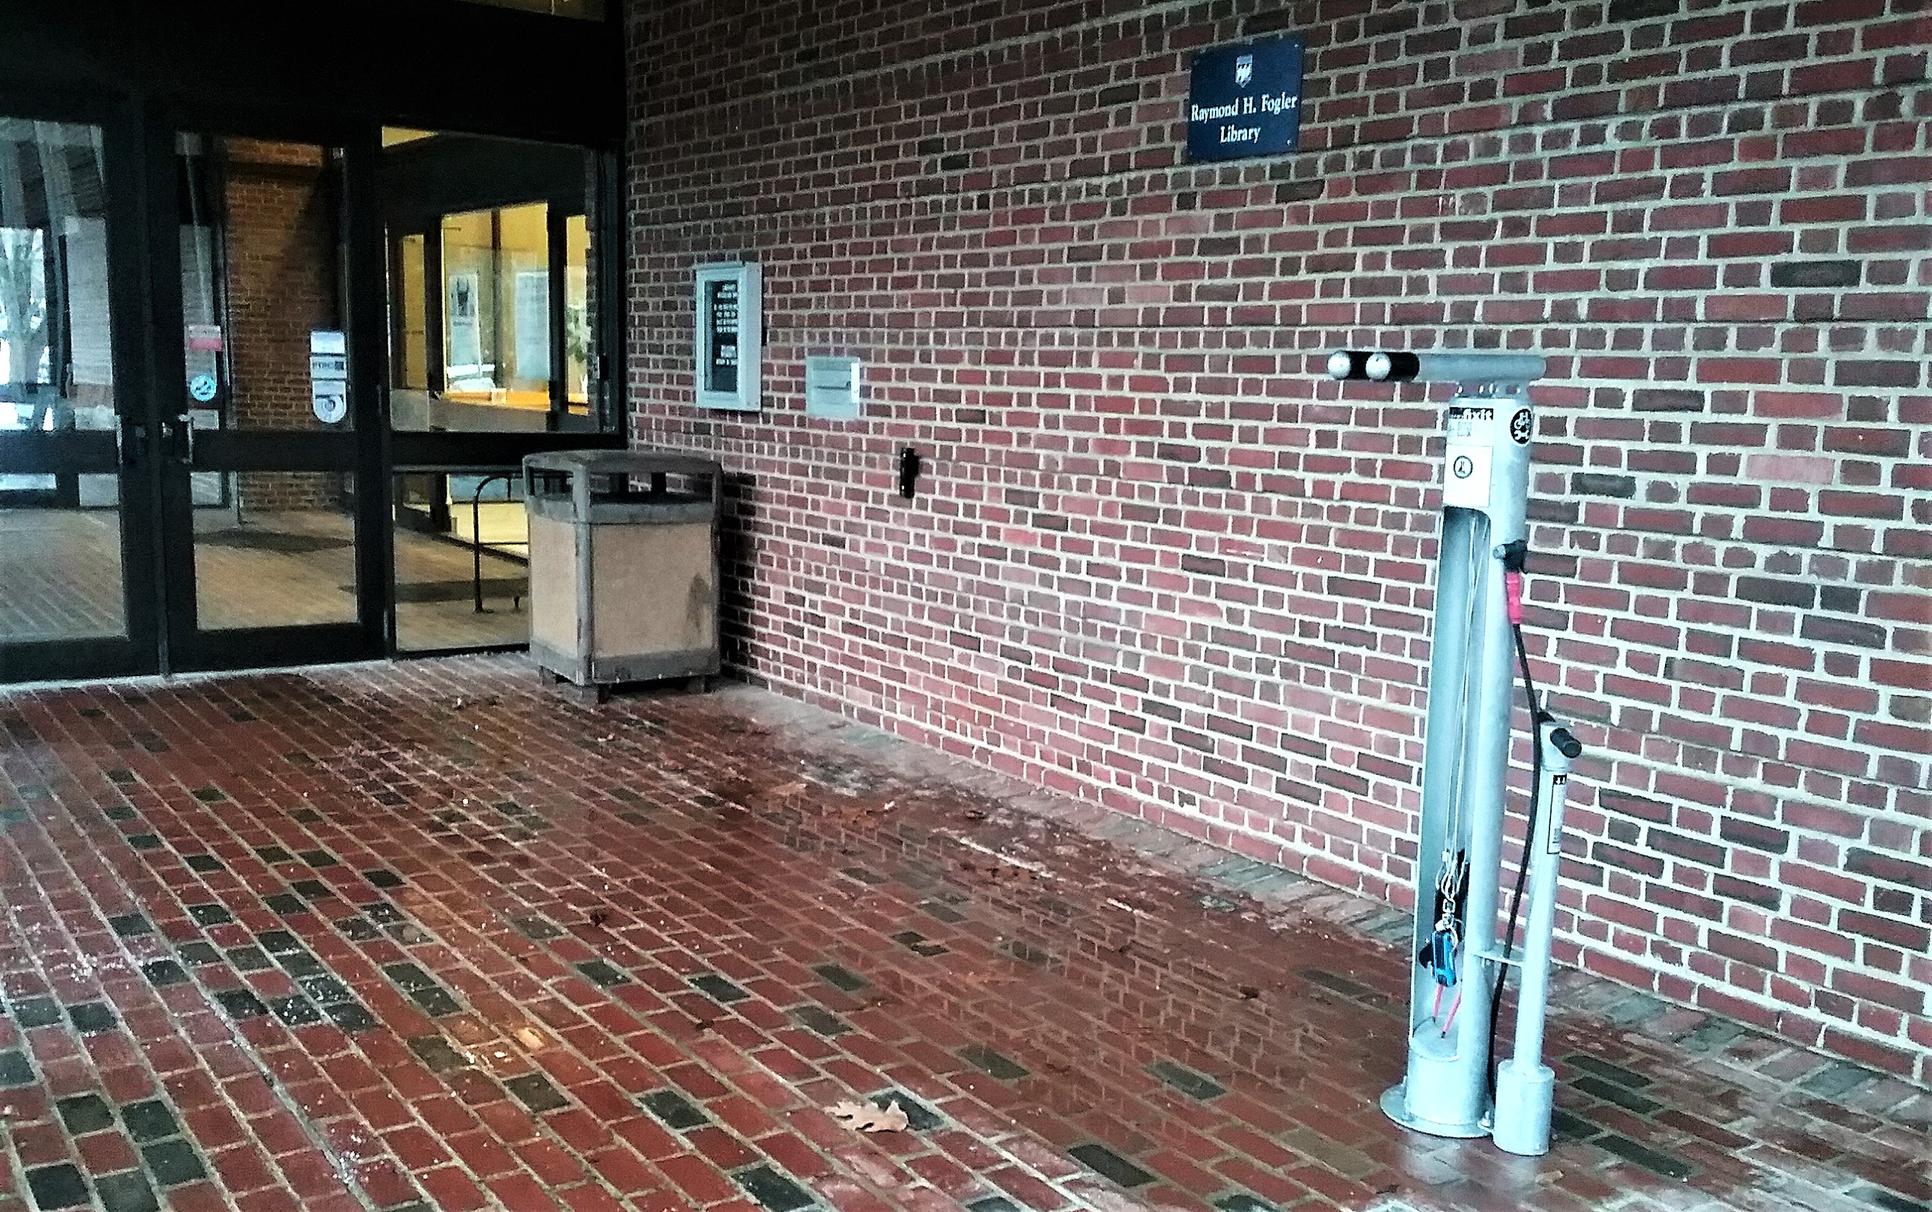 Library bike repair station